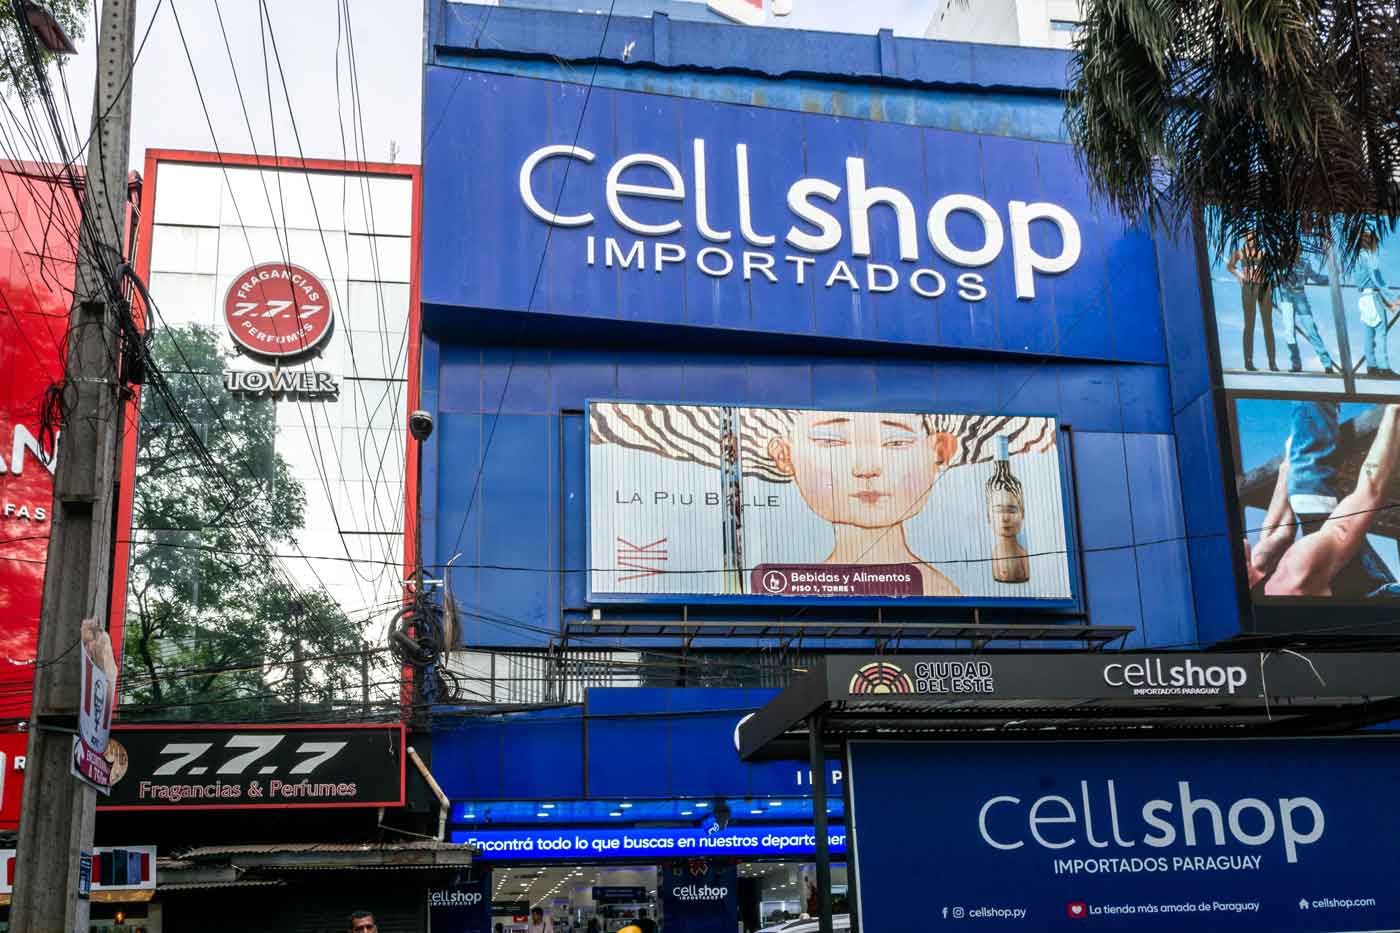 Loja Cellshop Importados - o que fazer em Ciudad del Este